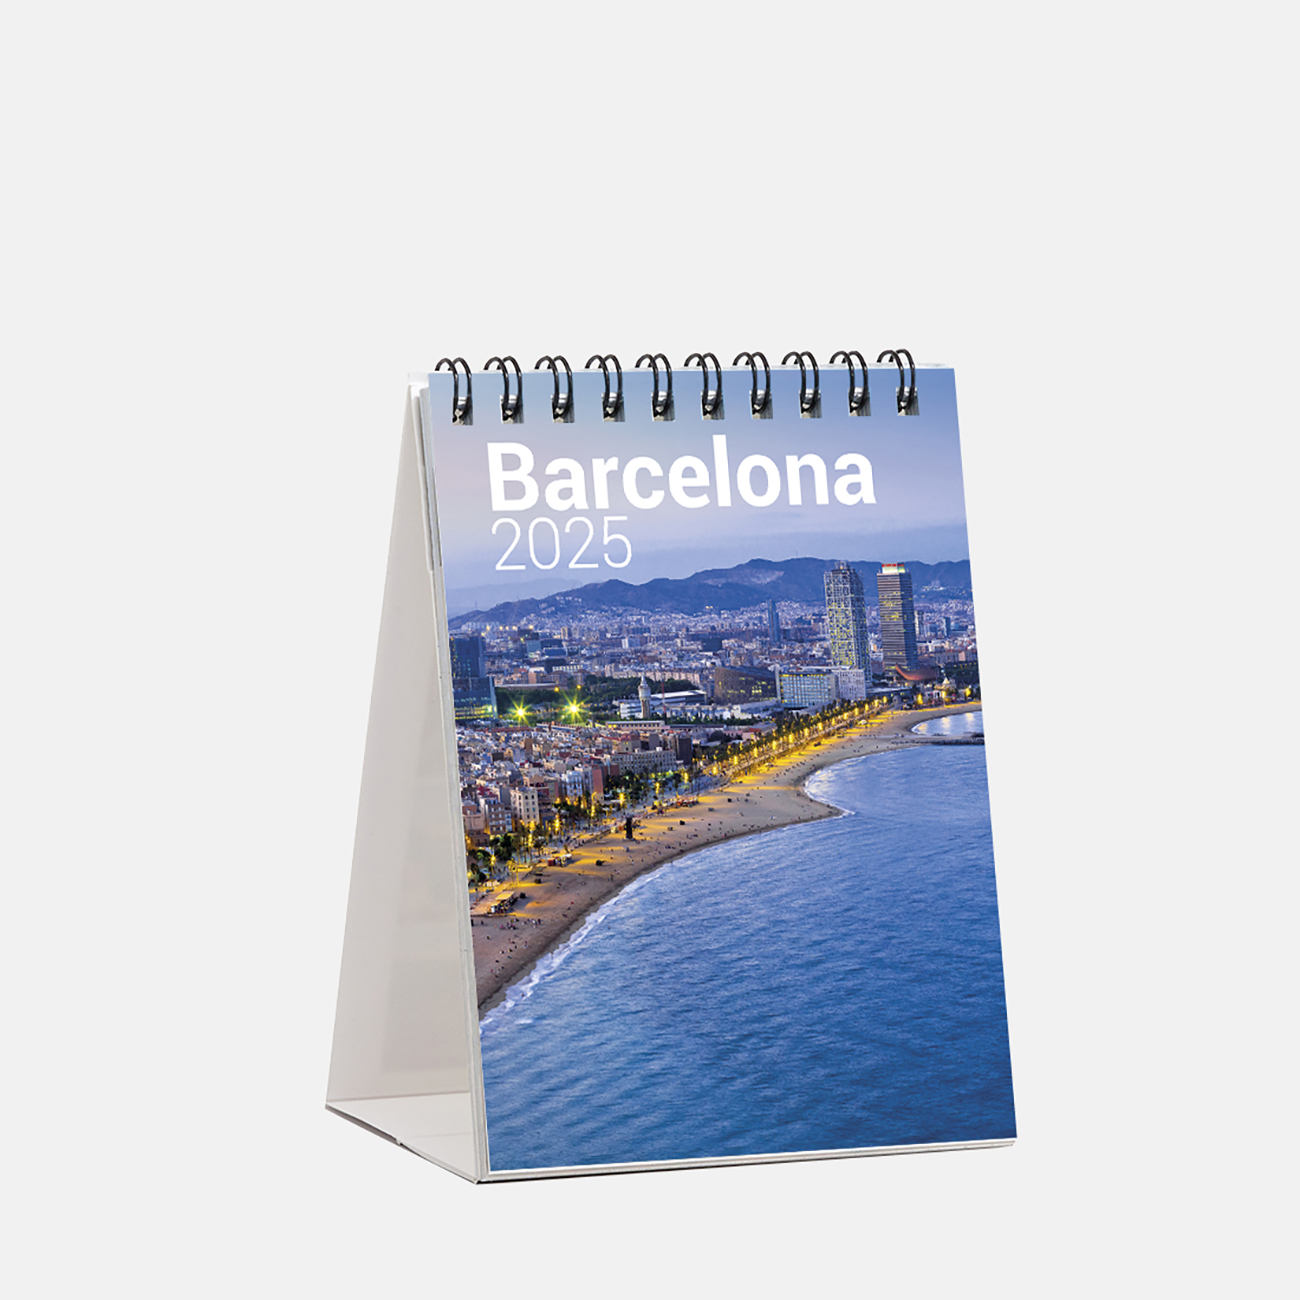 Calendar 2025 Barcelona sm25b calendario mini 2025 barcelona